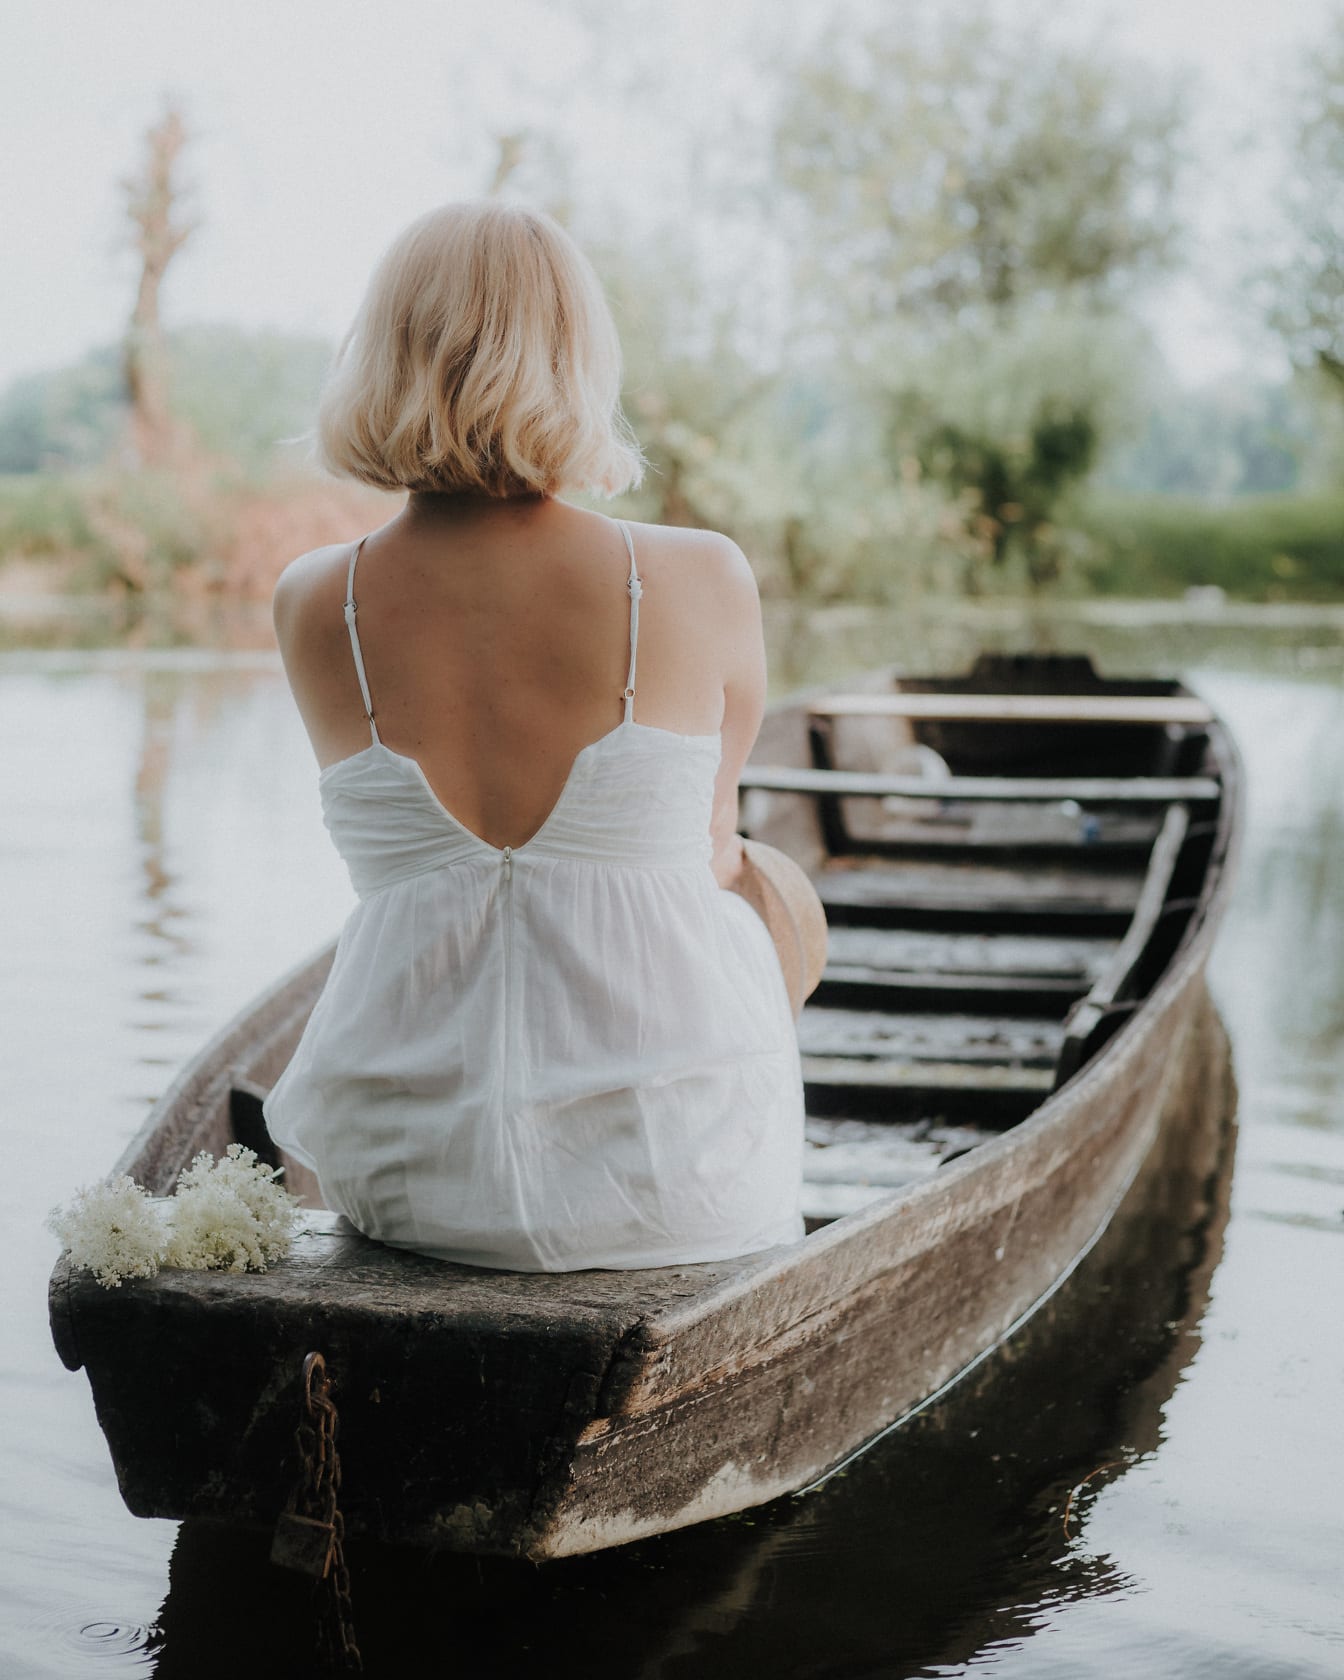 Blondynka młoda kobieta w białej sukience siedzi w łodzi rybackiej